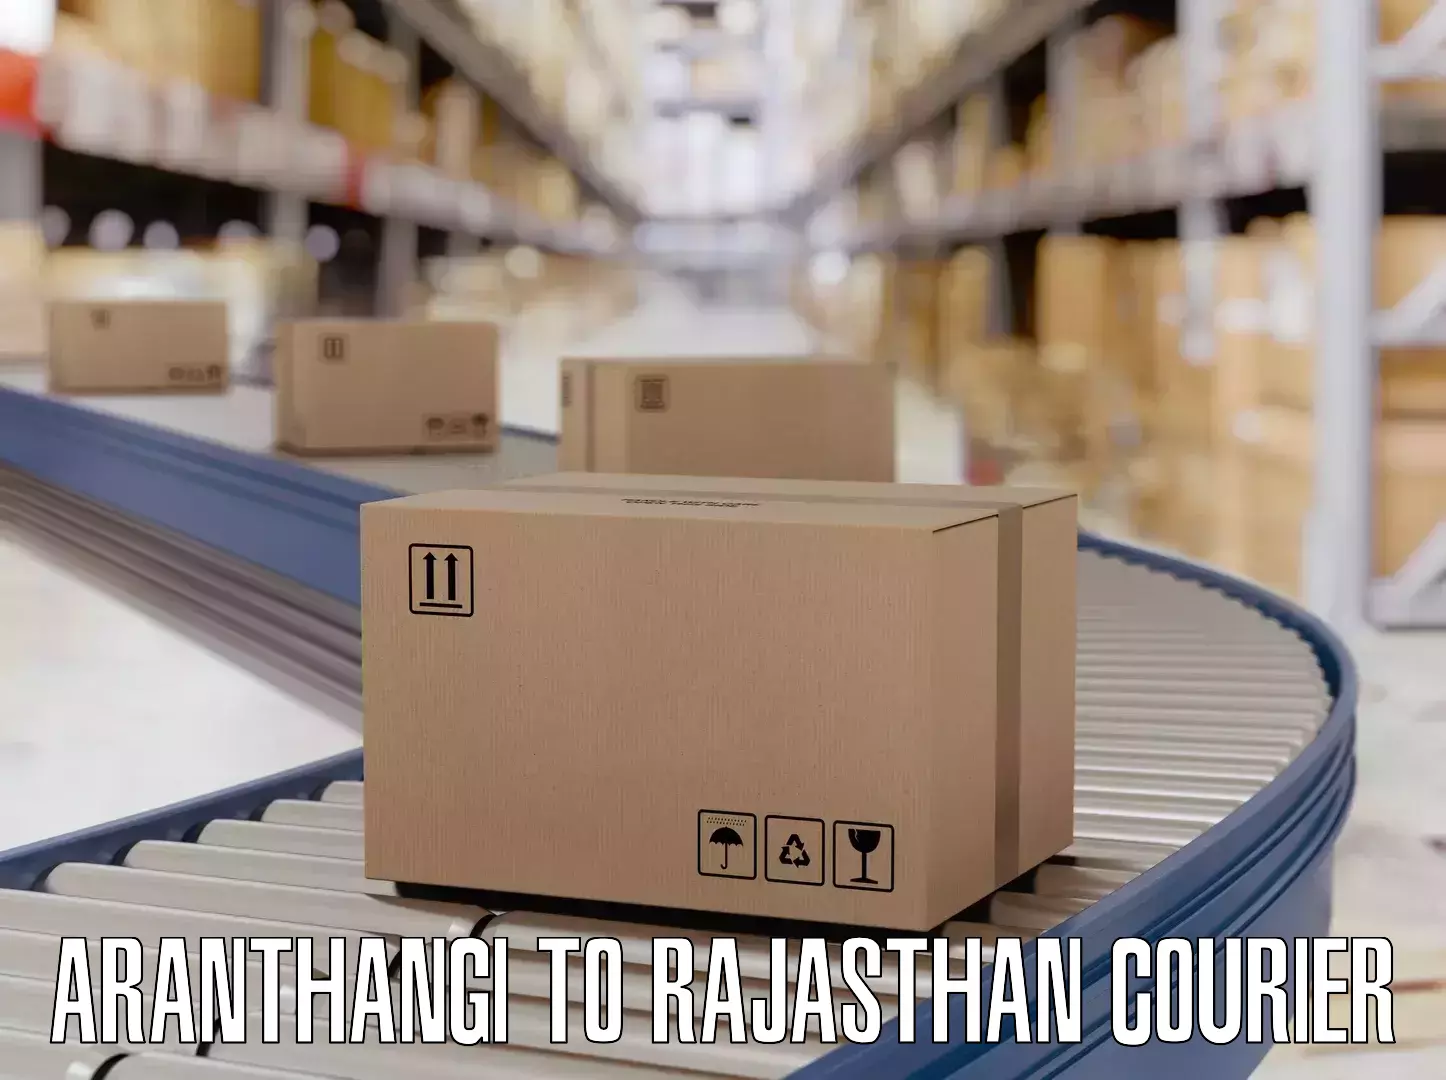 Luggage forwarding service Aranthangi to Sambhar